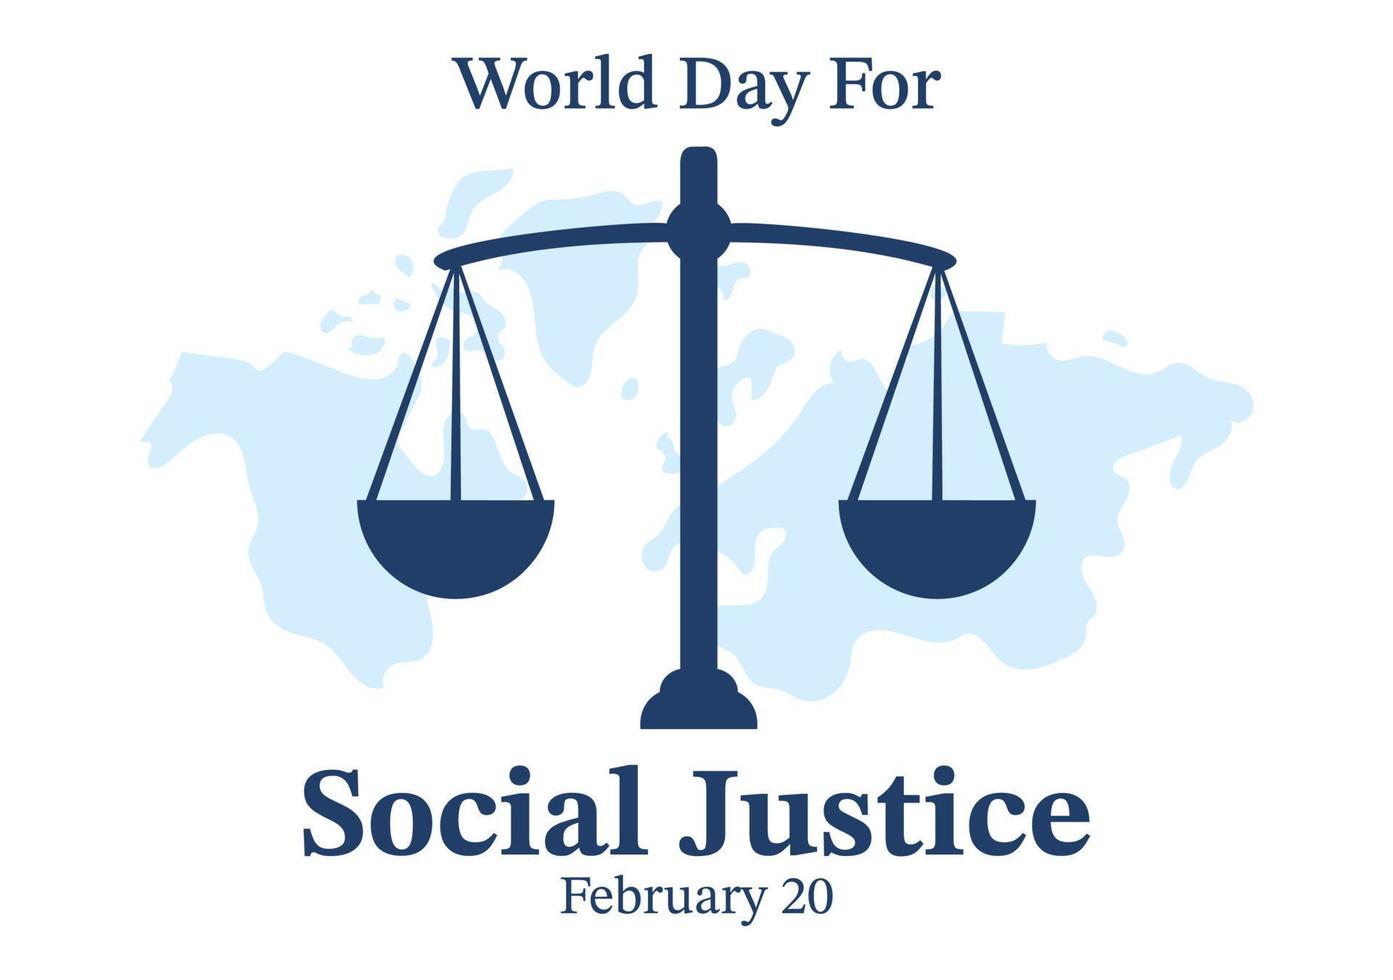 día mundial de la justicia social el 20 de febrero con escamas o martillo  para una relación justa en dibujos animados planos dibujados a mano  ilustración de plantillas 15015716 Vector en Vecteezy